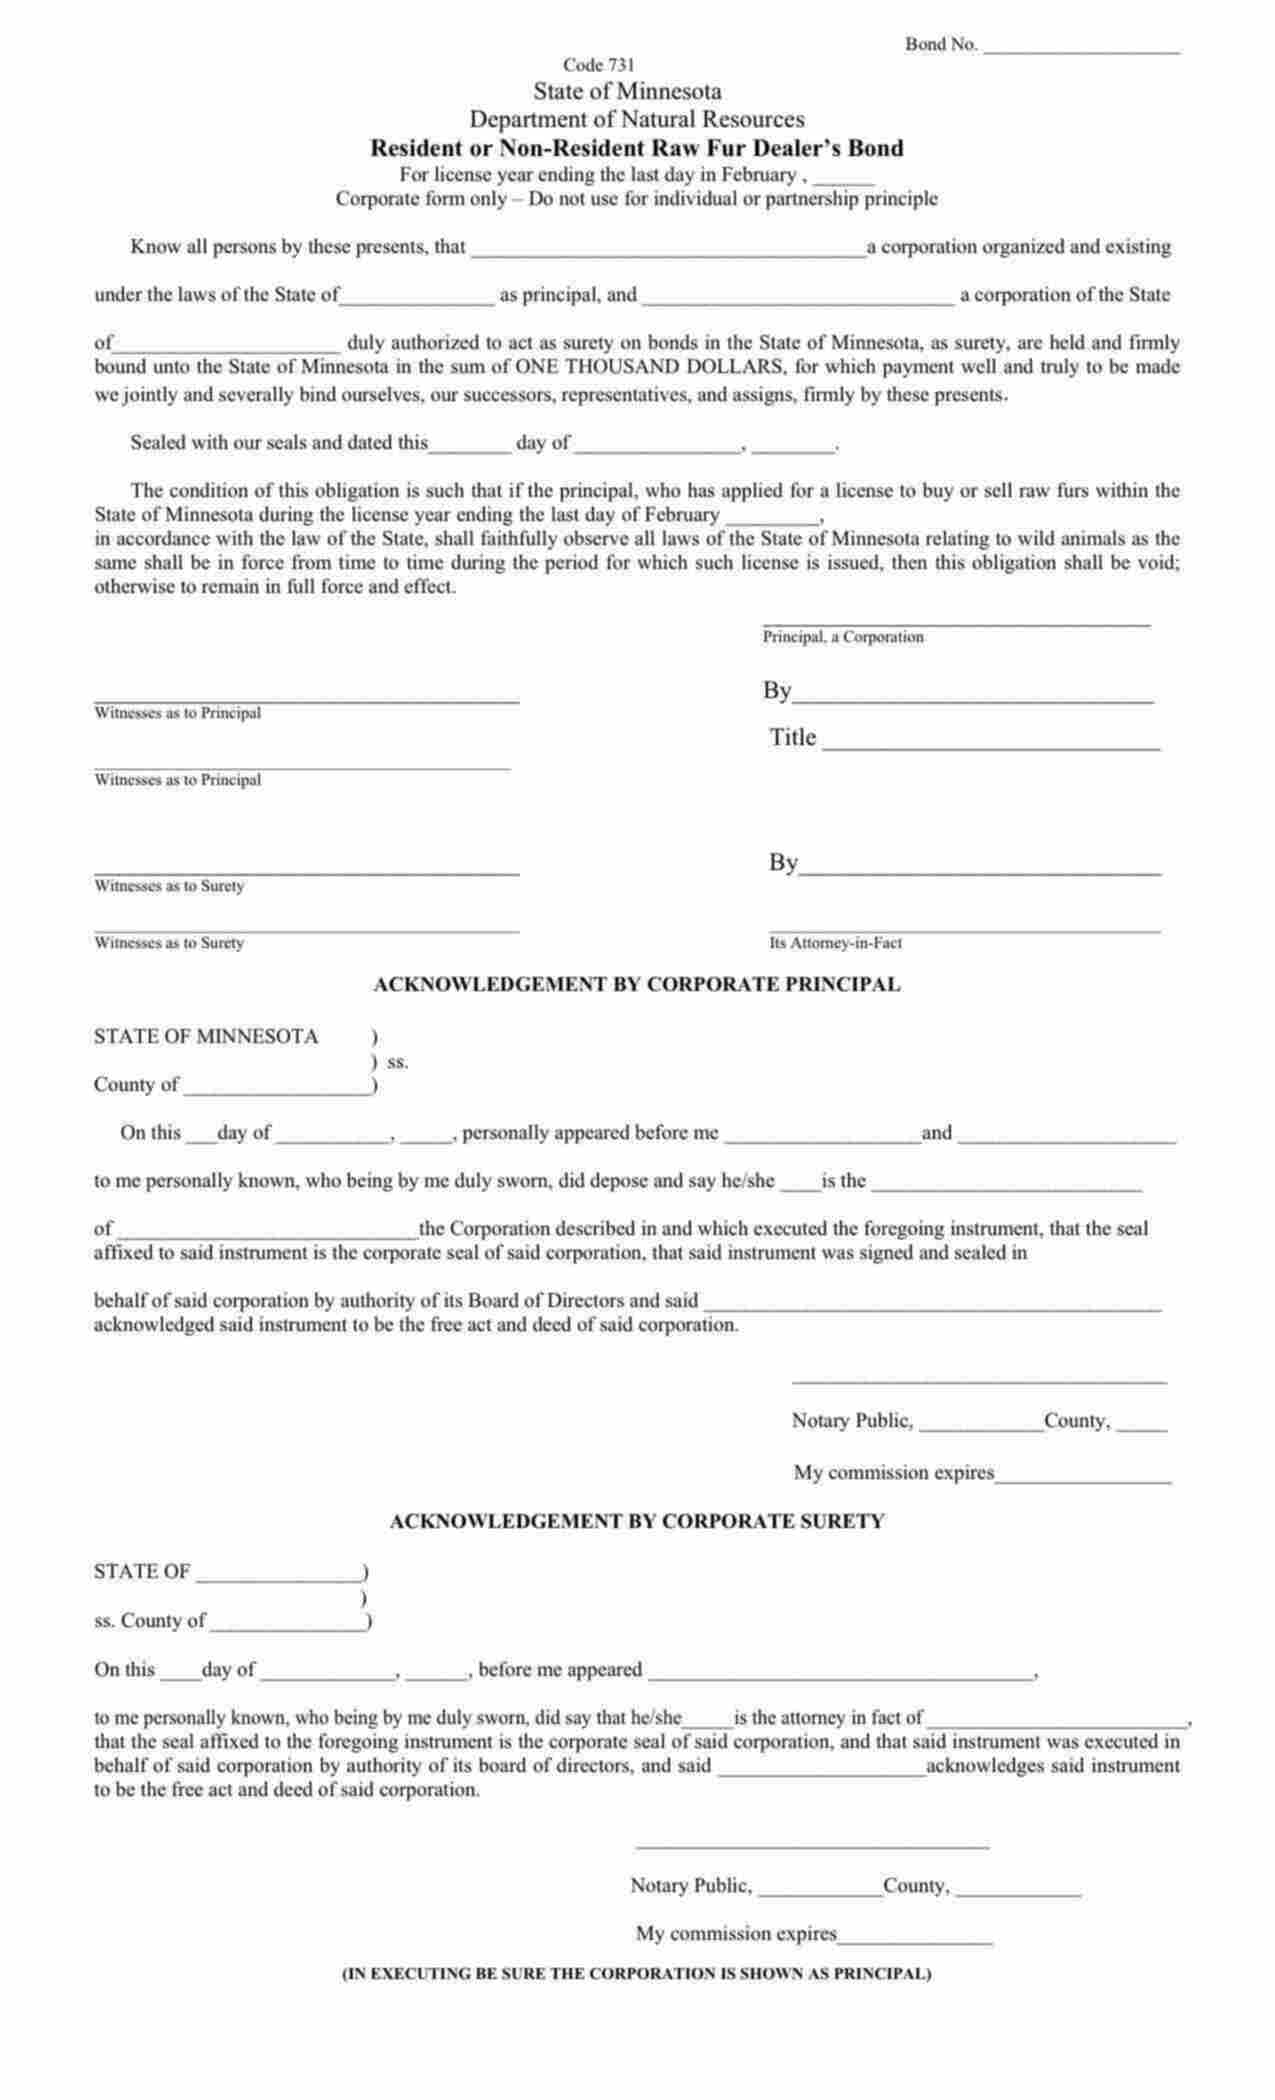 Minnesota Resident or Non-Resident Fur Dealer (Corporation/LLC) Bond Form